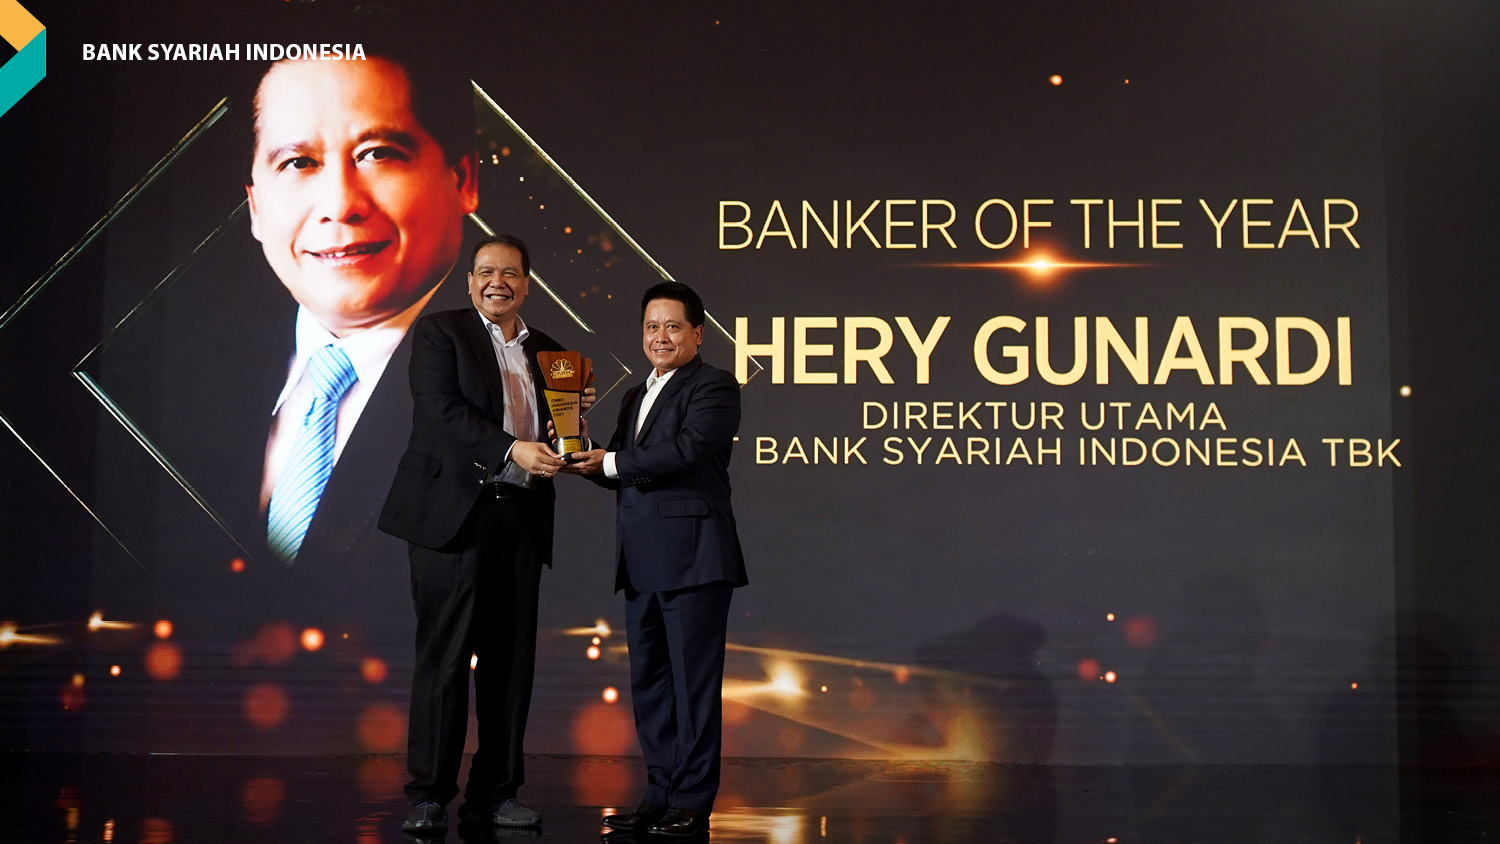 Direktur Utama PT Bank Syariah Indonesia Tbk, Hery Gunardi (kanan) saat menerima penghargaan sebagai Banker of The Year dalam ajang CNBC Indonesia Awards 2021 yang diserahkan oleh Chairman CT CORP, Chairul Tanjung (kiri) di Jakarta, Selasa, 14 Desember 2021.